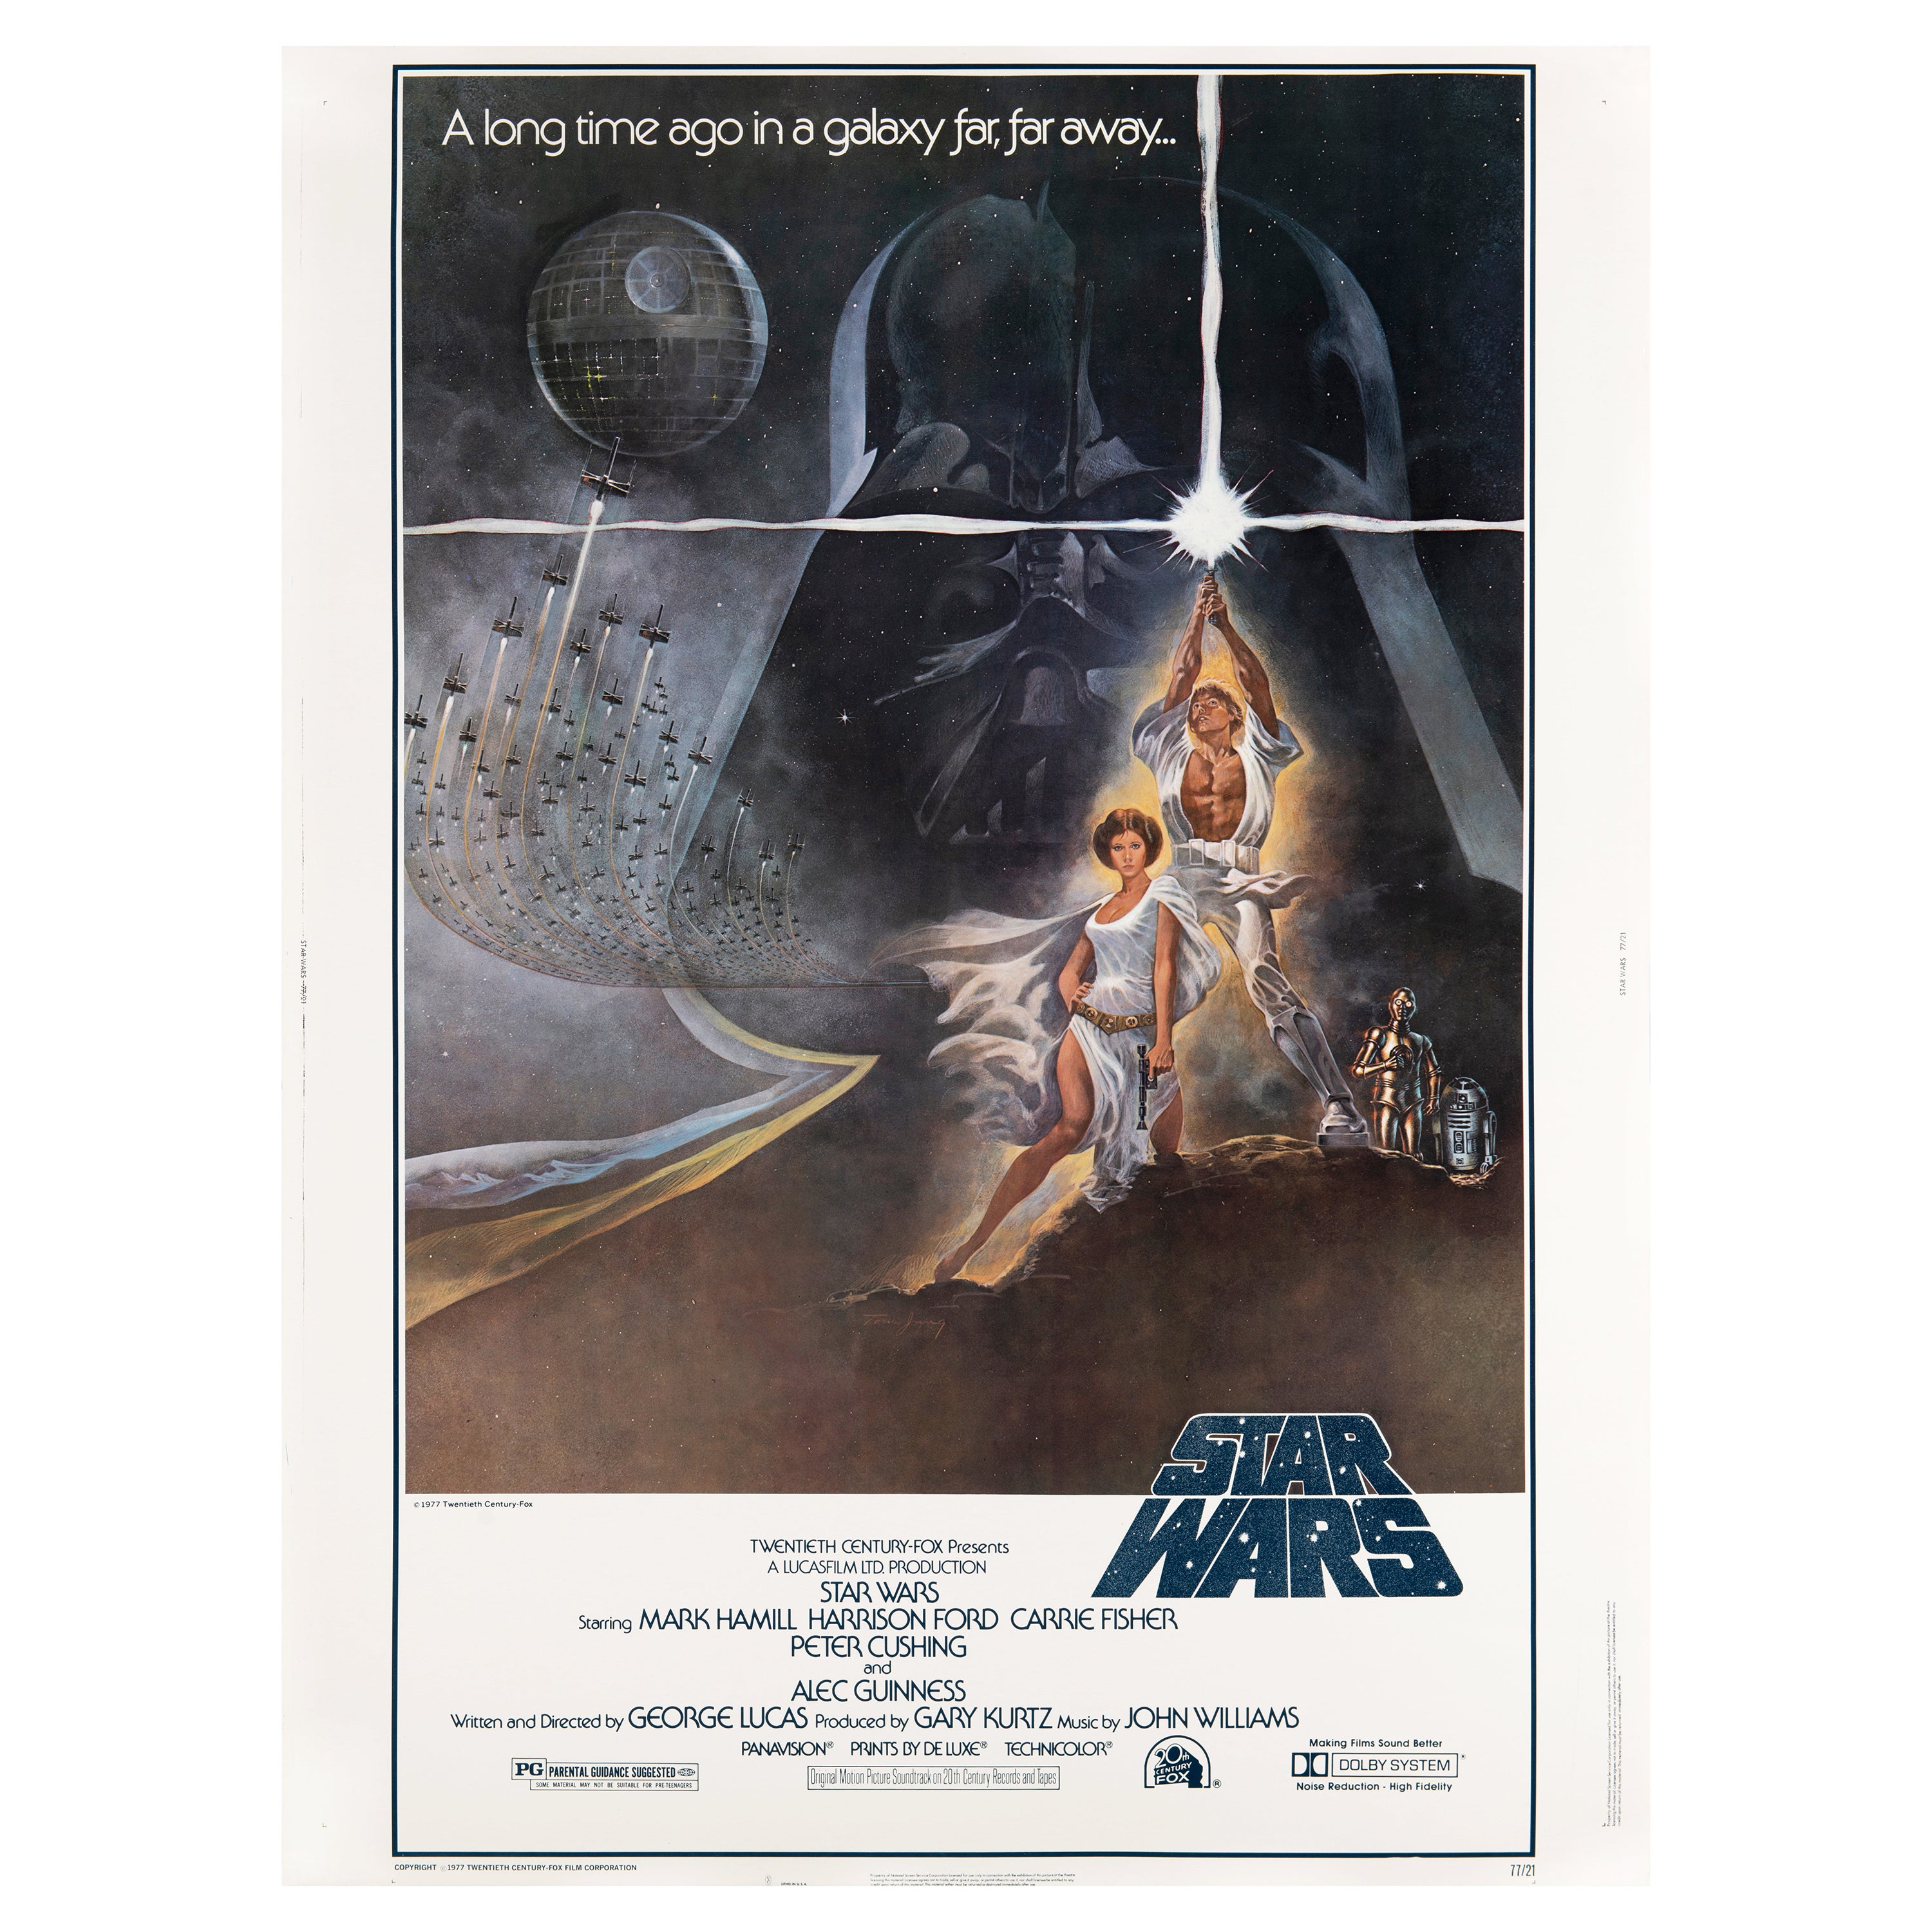 'Star Wars' Original Vintage Movie Poster by Tom Jung, American, 1977